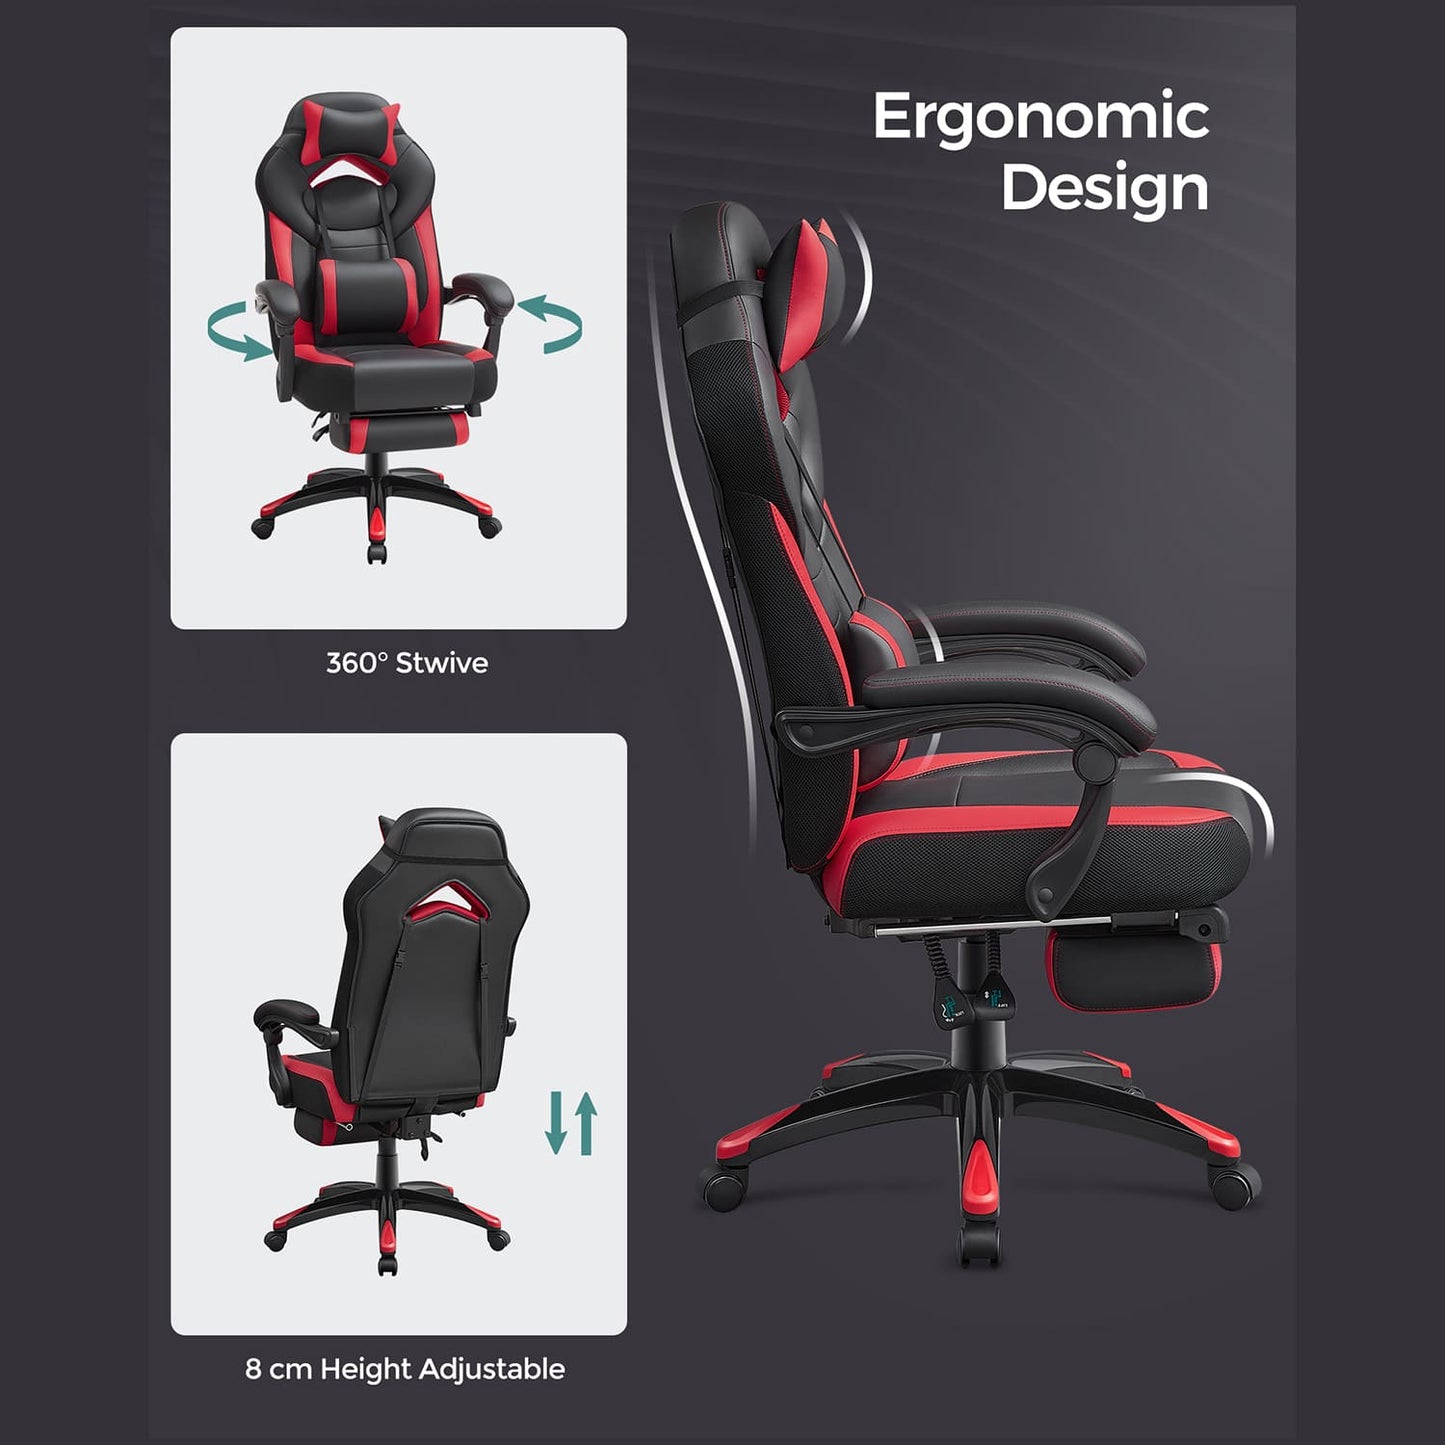 SONGMICS - Chaise gamer, Design ergonomique, avec repose-pieds, réglable en hauteur sur 8 cm, pivote à 360°